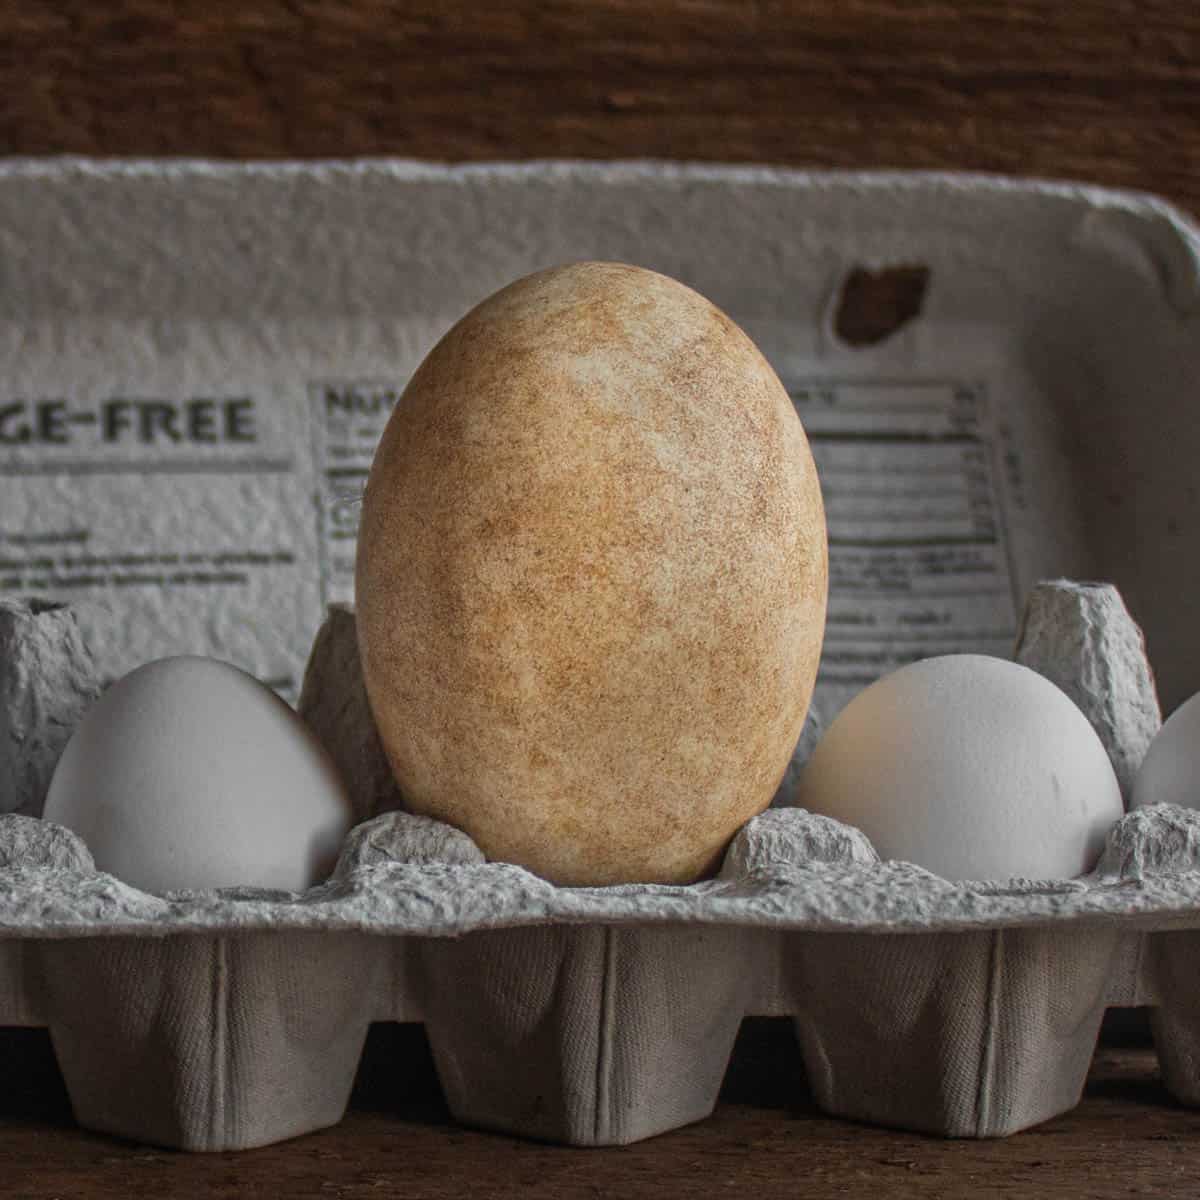 wild goose egg next to chicken egg comparison